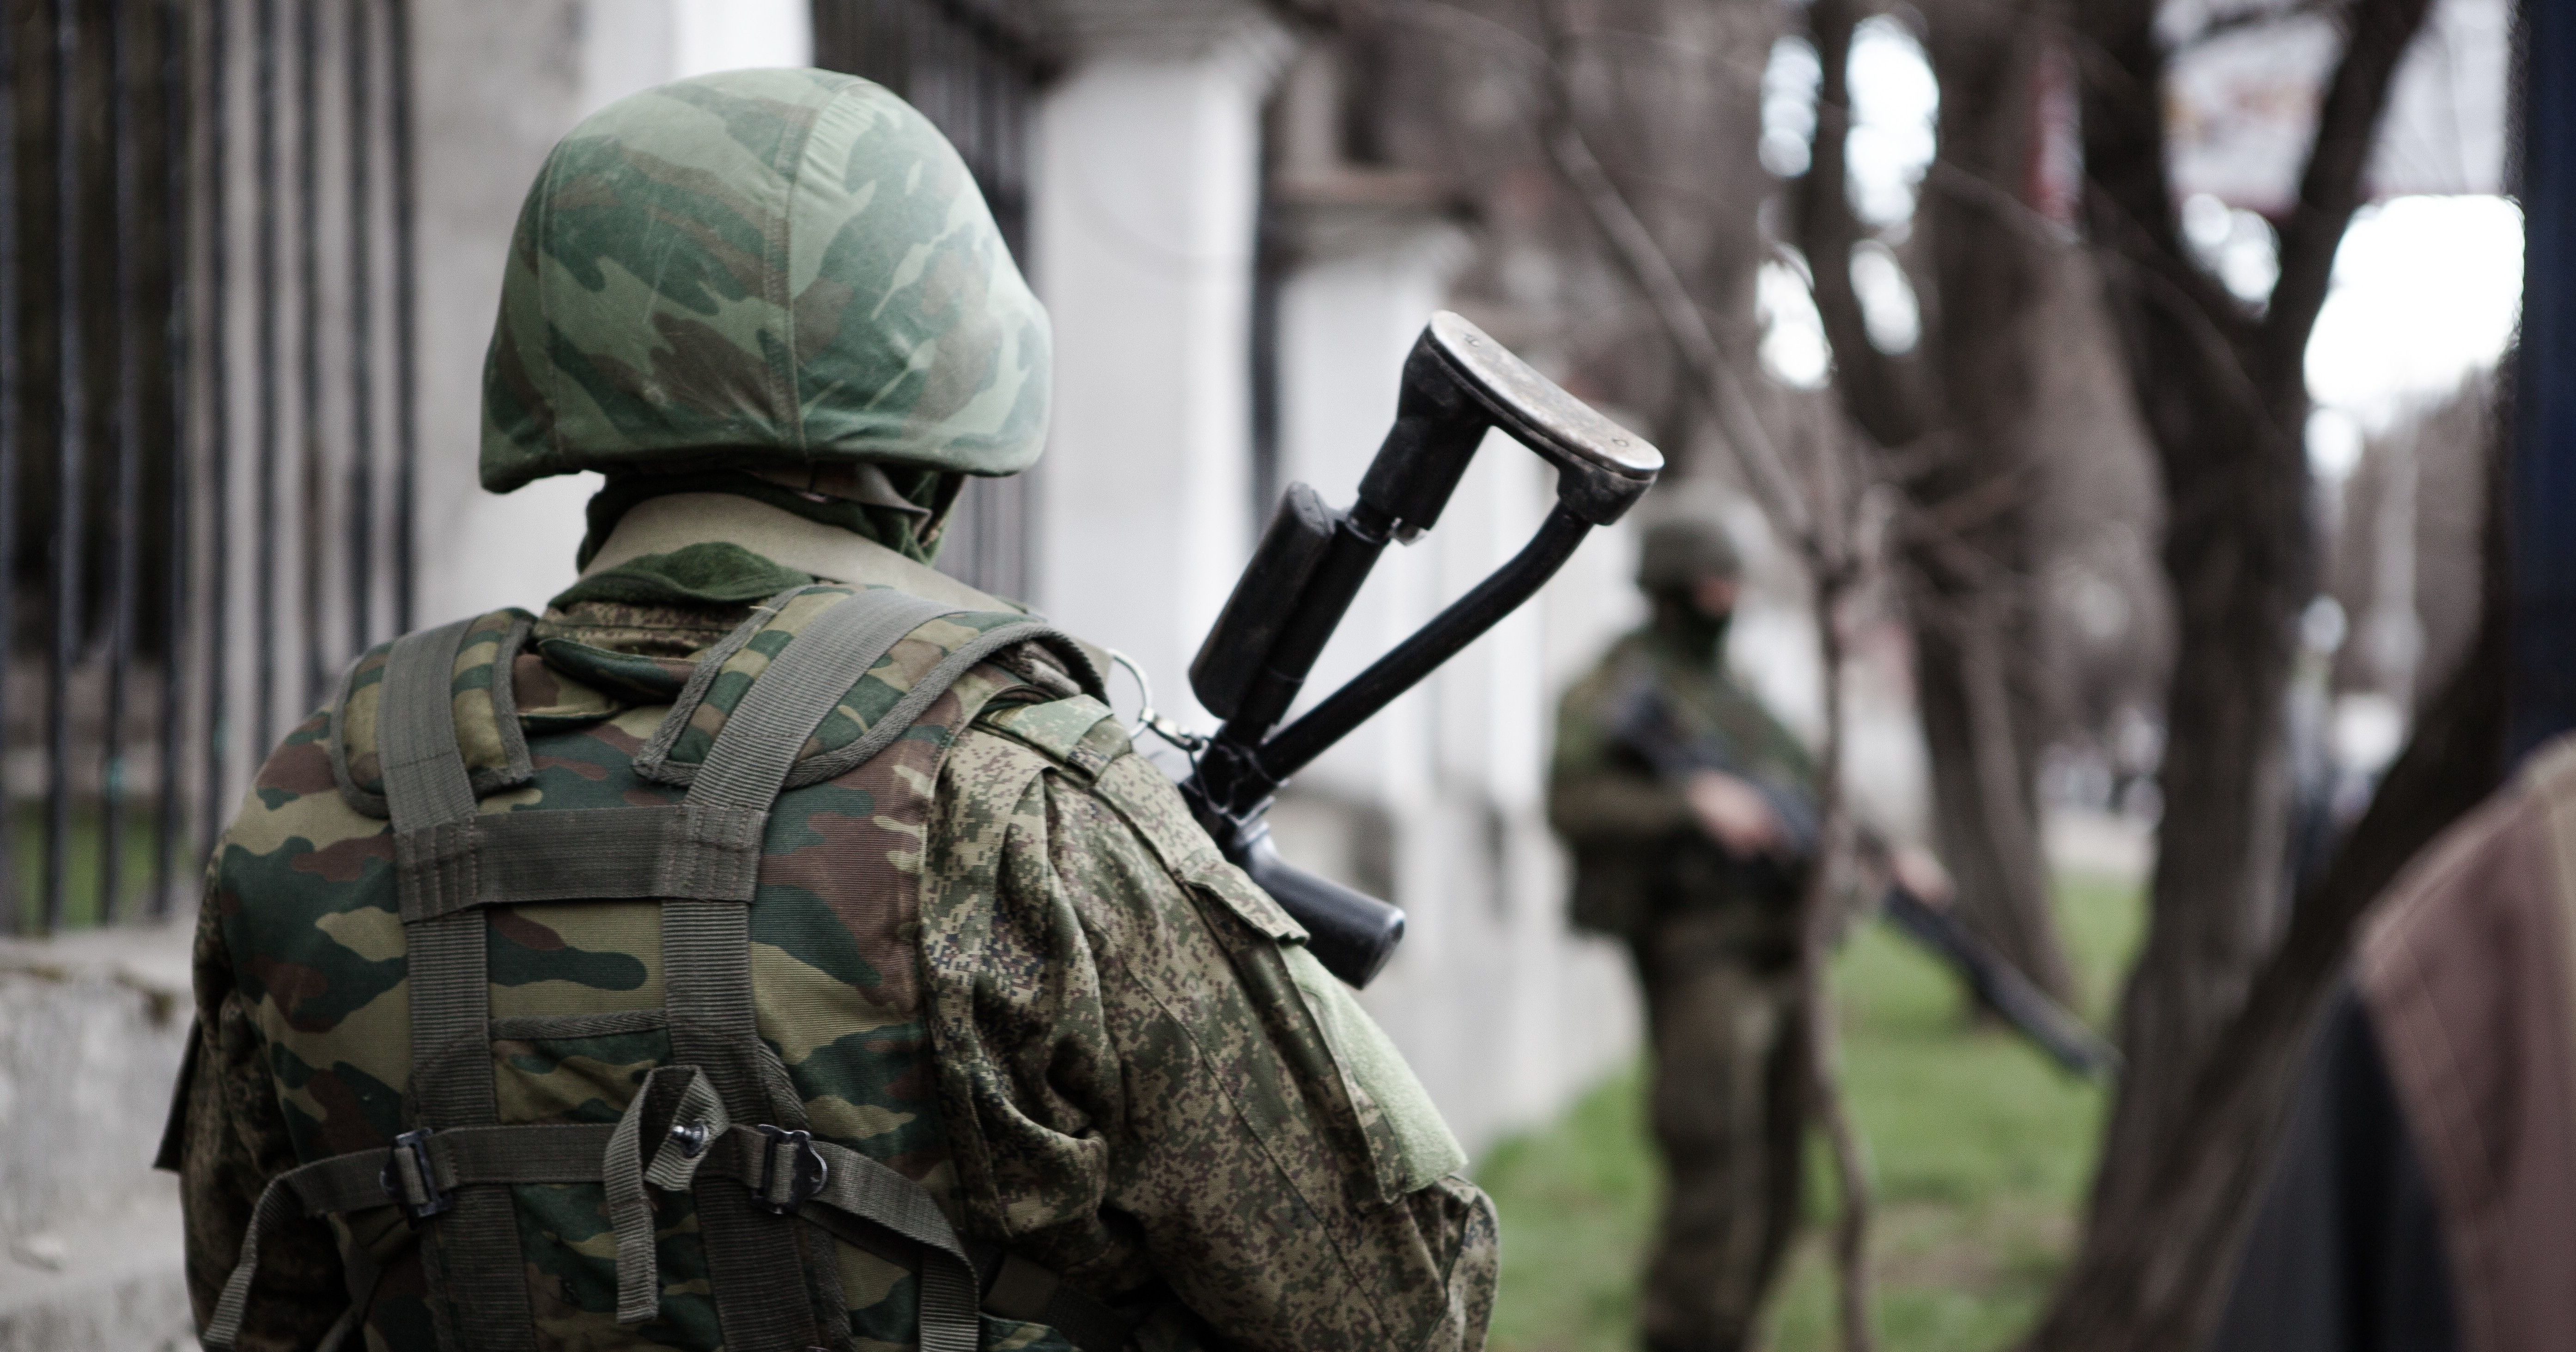 Боевики "Исламского государства" взяли на себя ответственность за нападение в Чечне – СМИ